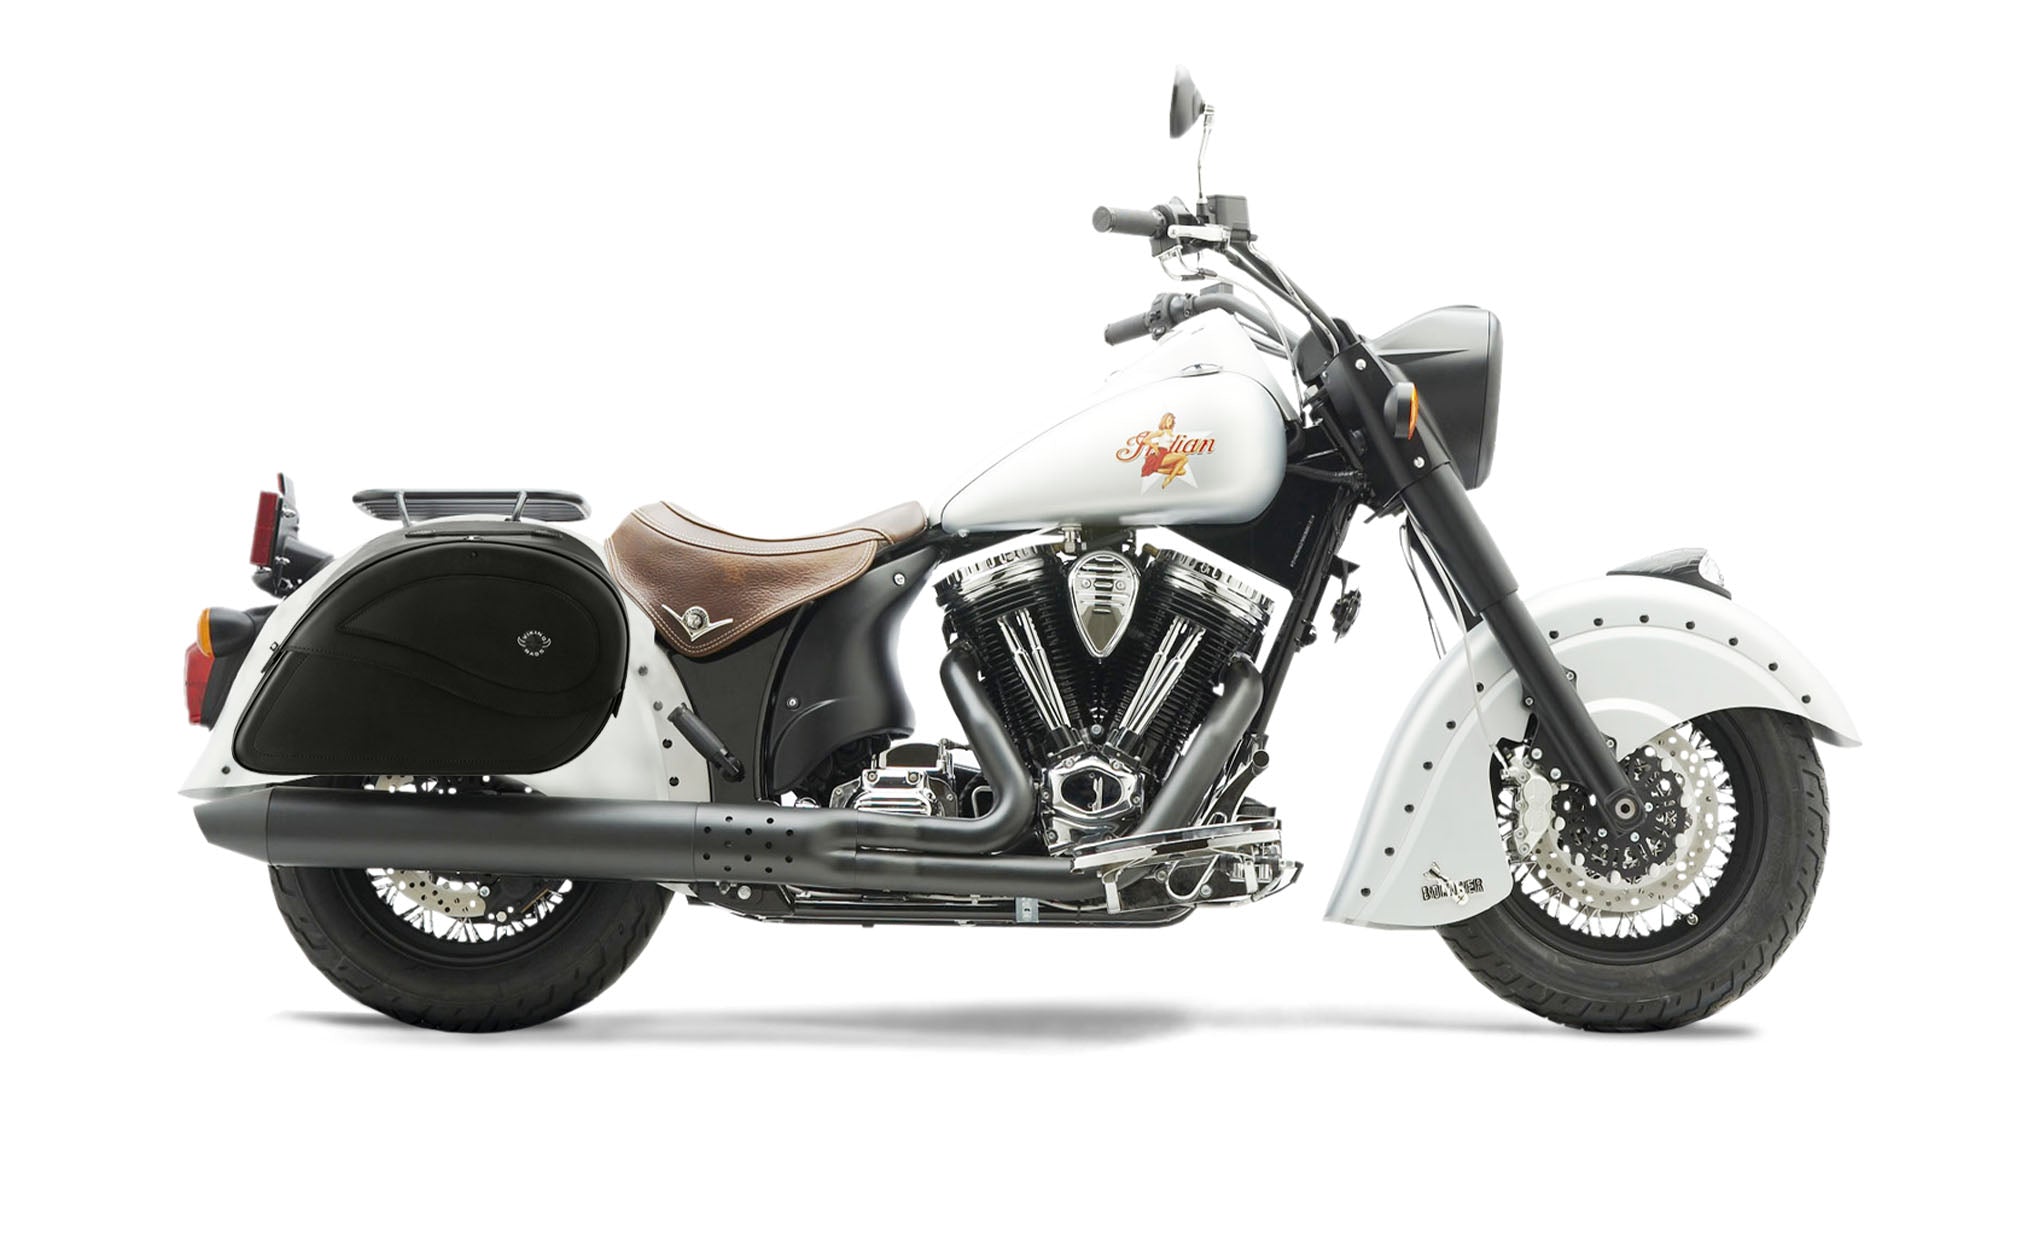 Viking Ultimate Large Indian Chief Bomber Leather Motorcycle Saddlebags on Bike Photo @expand